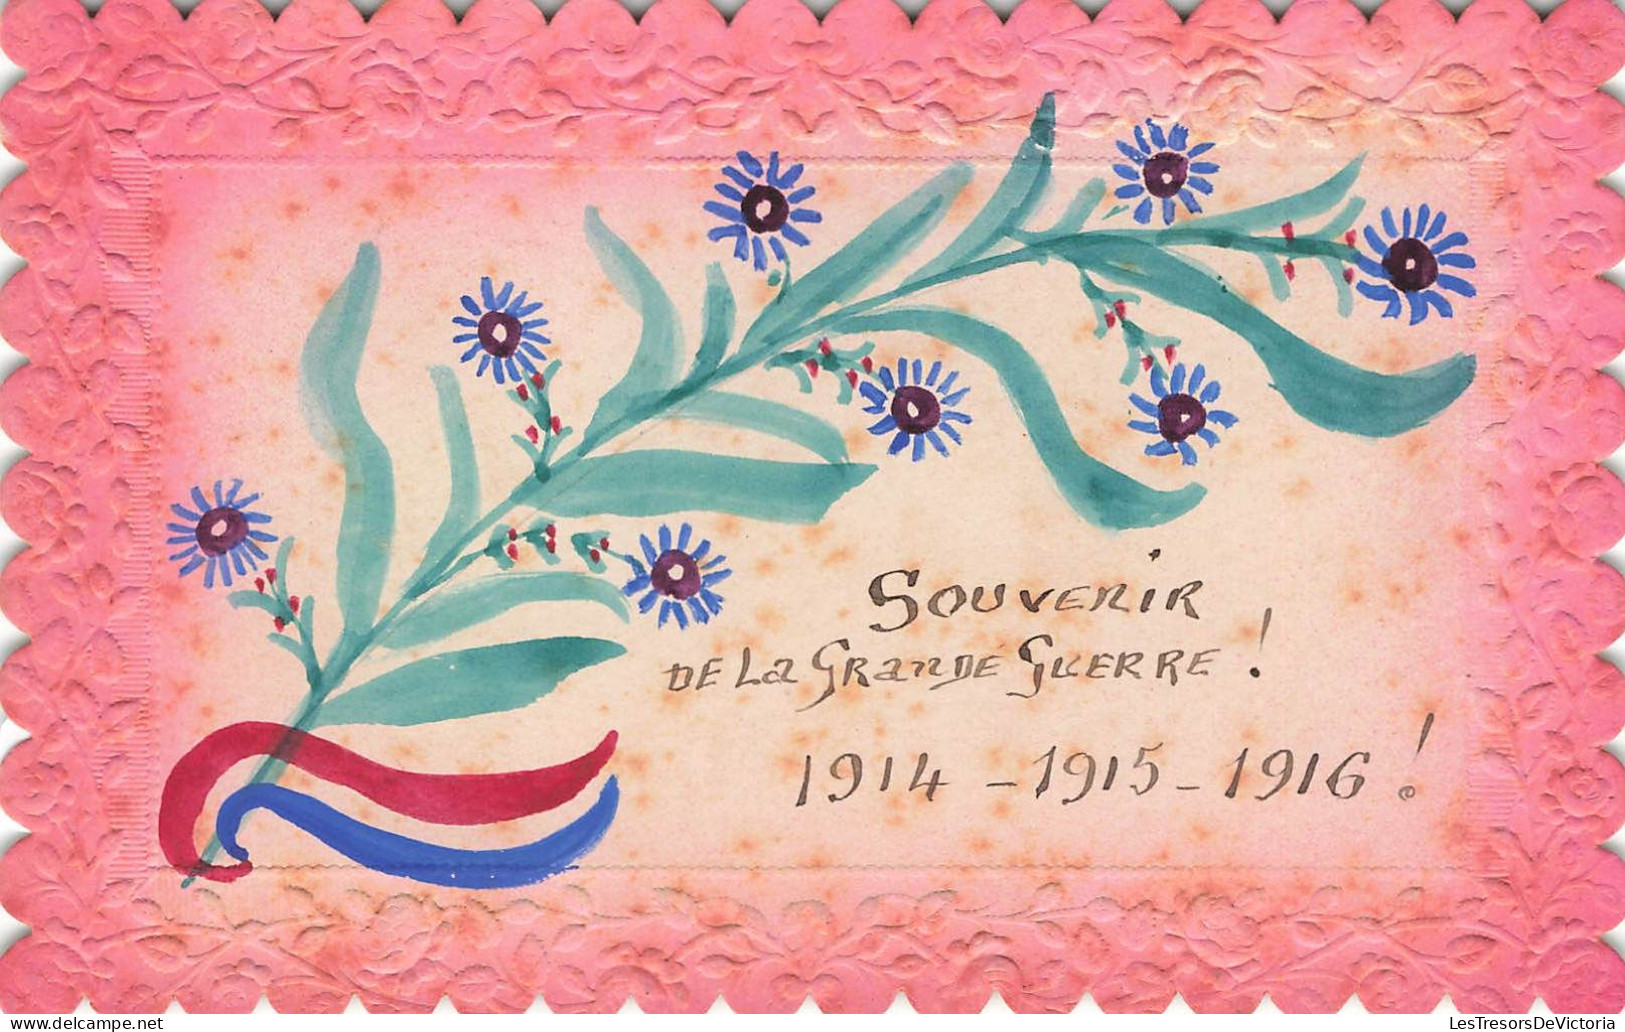 SOUVENIR DE - Souvenir De La Grande Guerre! 1914 - 1915 - 1916 - Colorisé - Carte Postale Ancienne - Souvenir De...